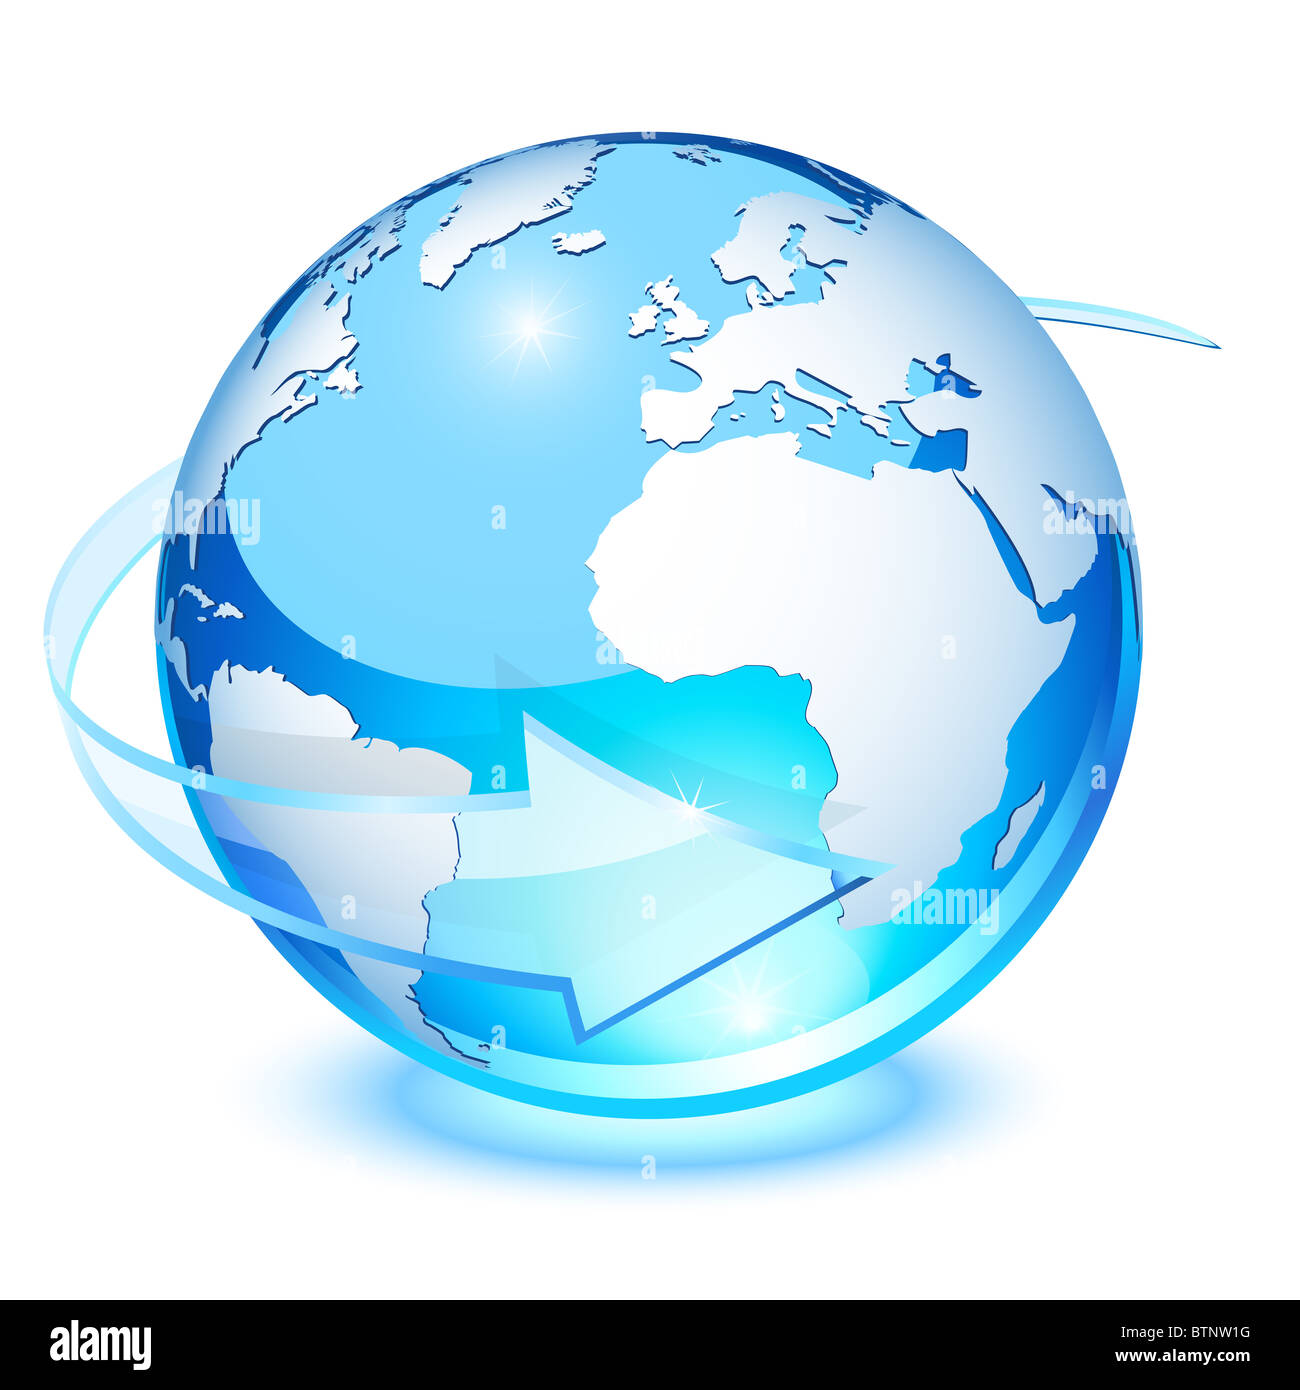 Cristal azul transparente de la tierra, con la flecha de rotación Foto de stock